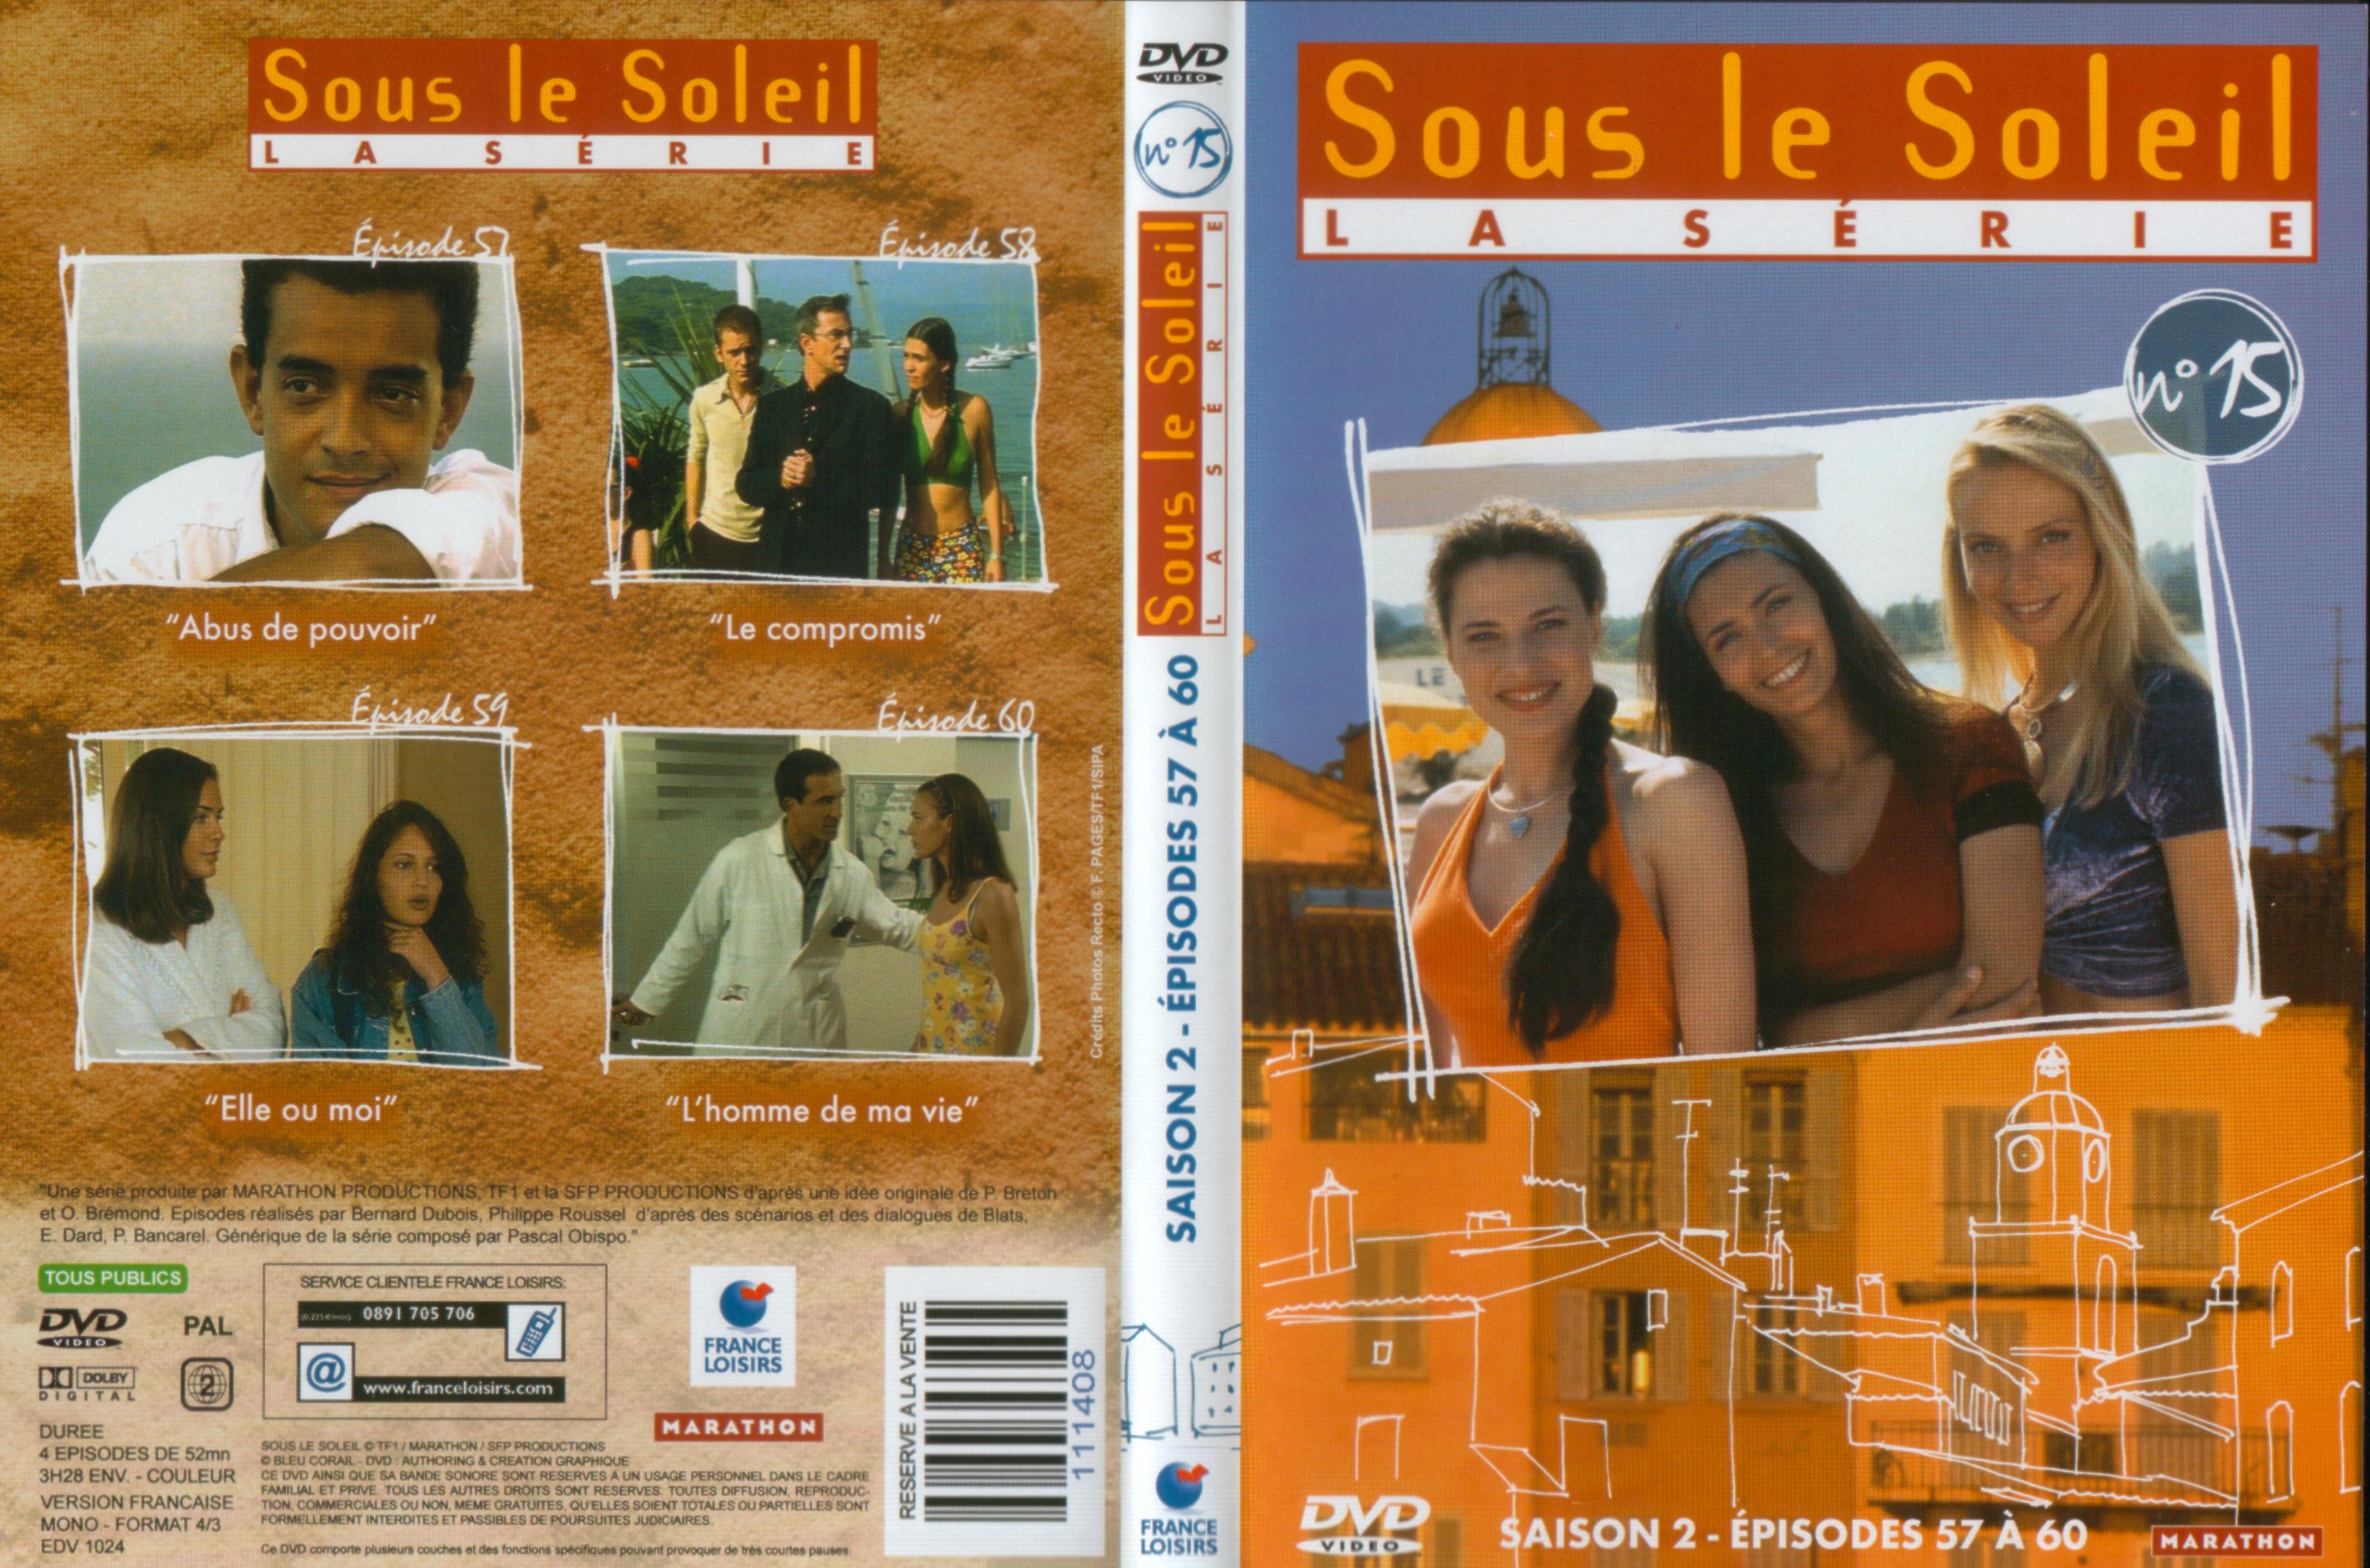 Jaquette DVD Sous le soleil saison 2 vol 15